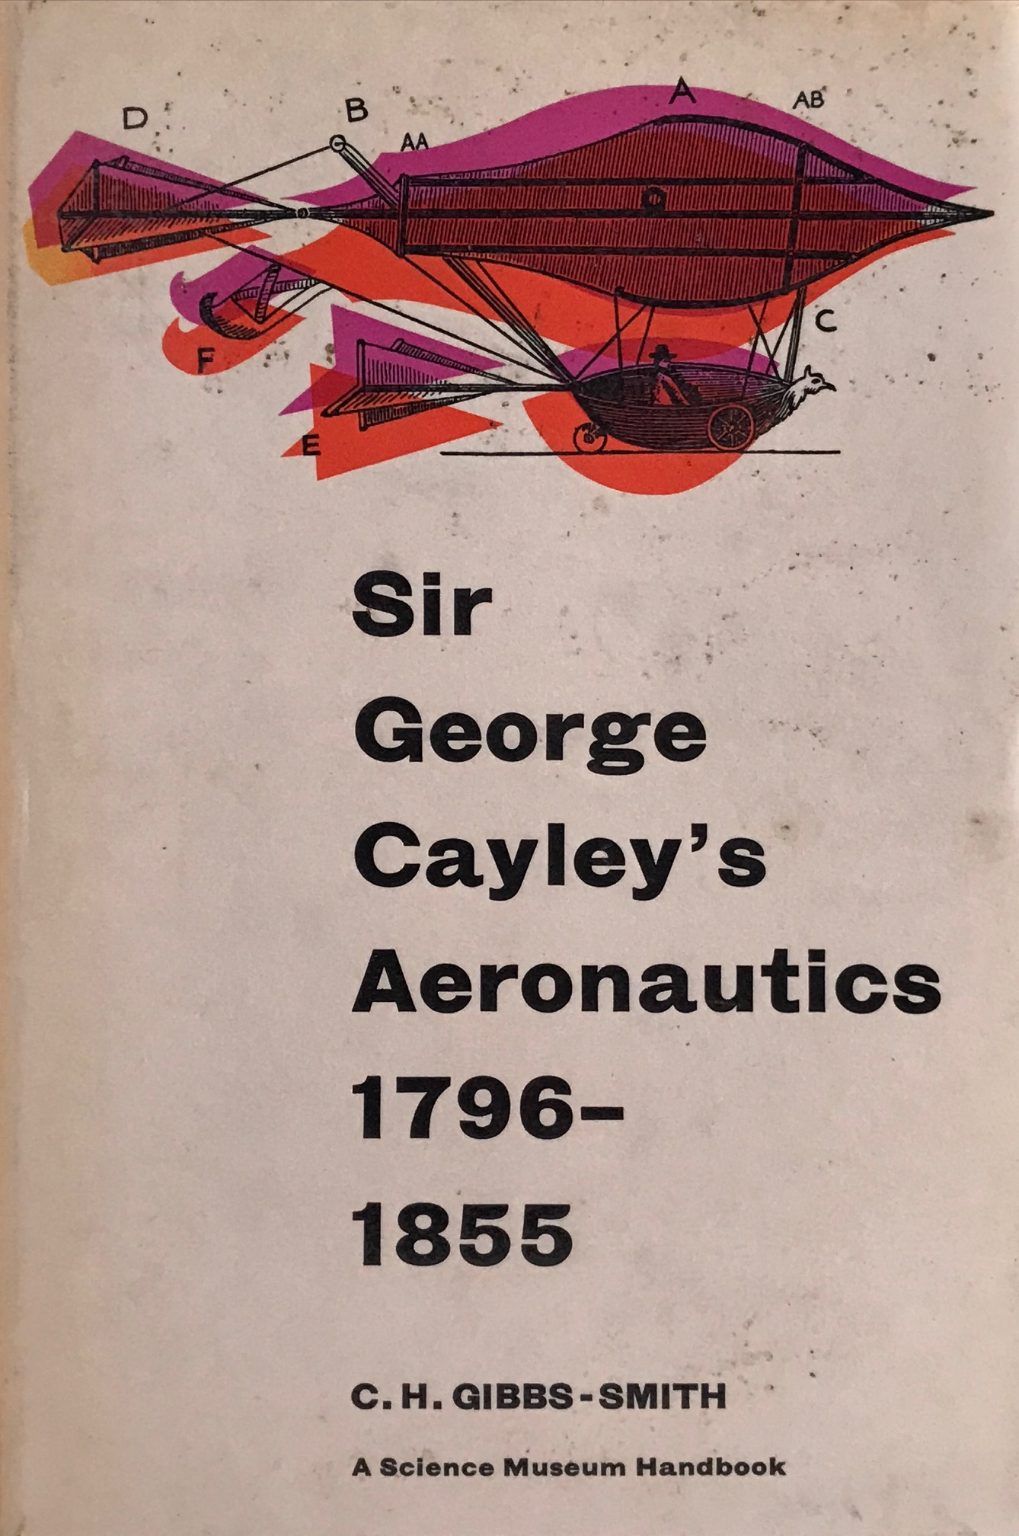 SIR GEORGE CAYLEYS AERONAUTICS 1796-1855